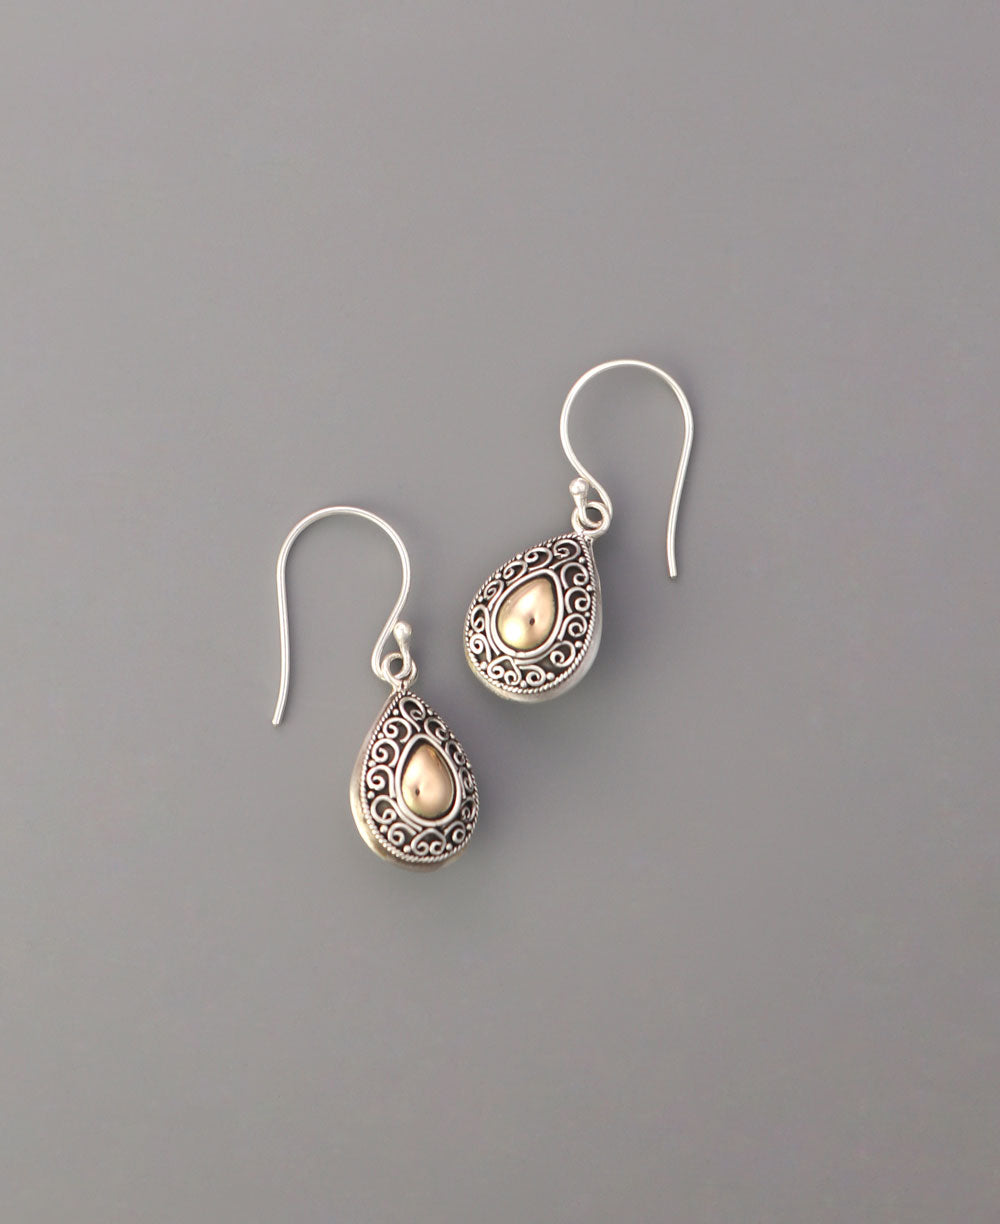 Bohemian sterling silver teardrop earrings